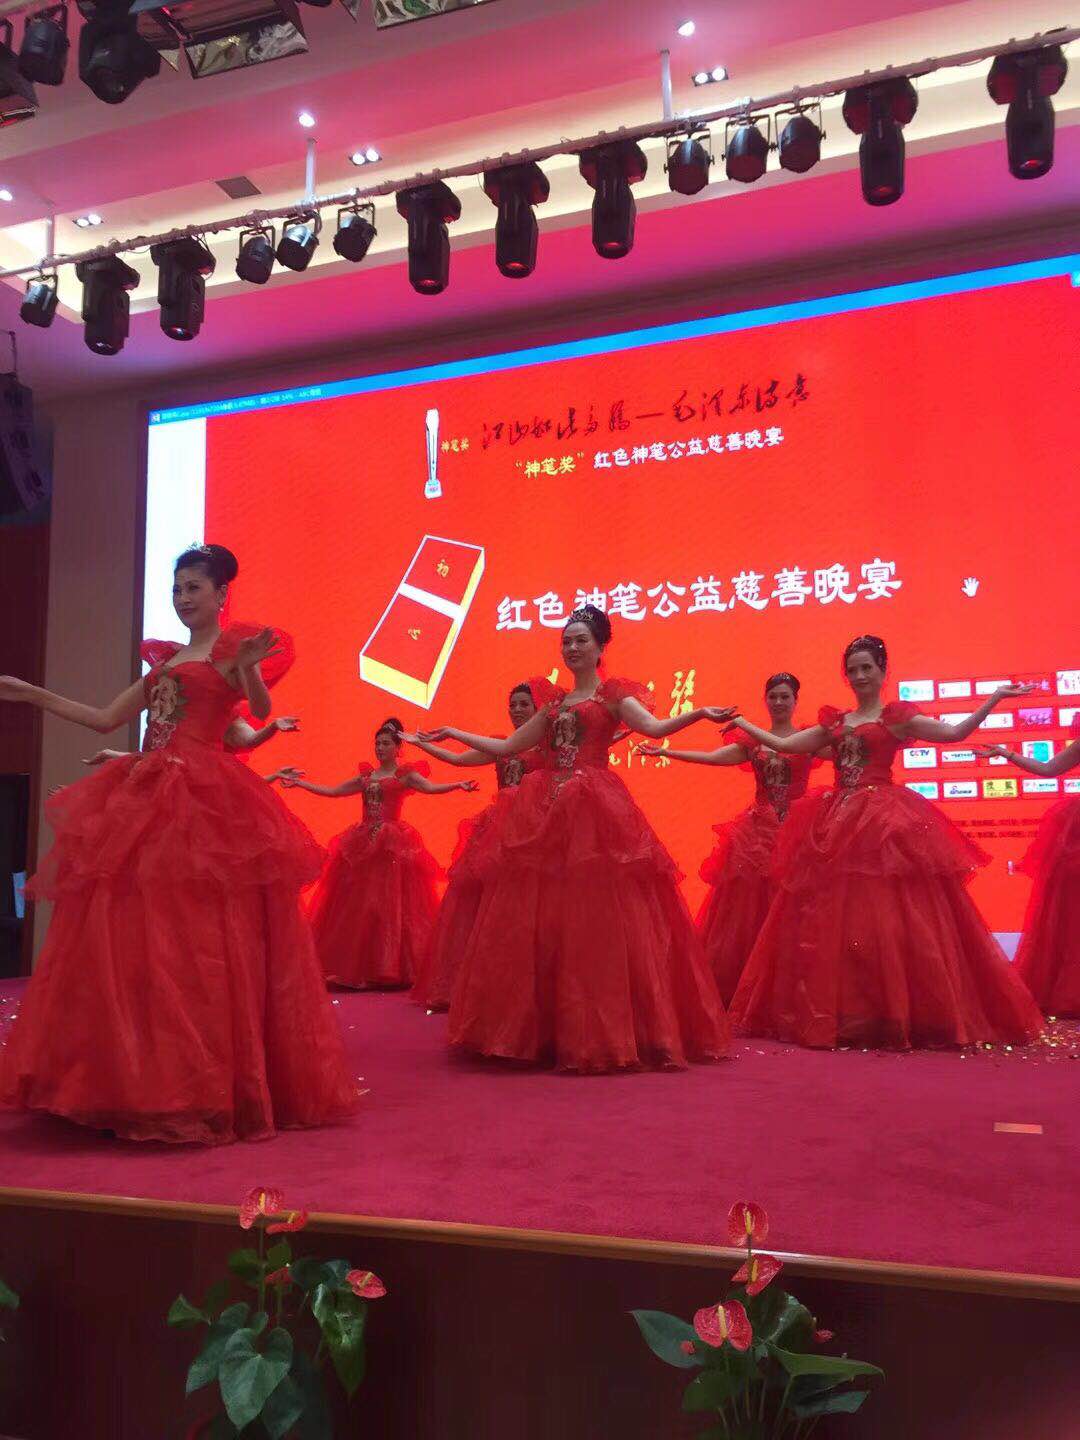 2018年6月3日下午在上海闵行区由“神笔奖”发起的红色神笔公益慈善活动